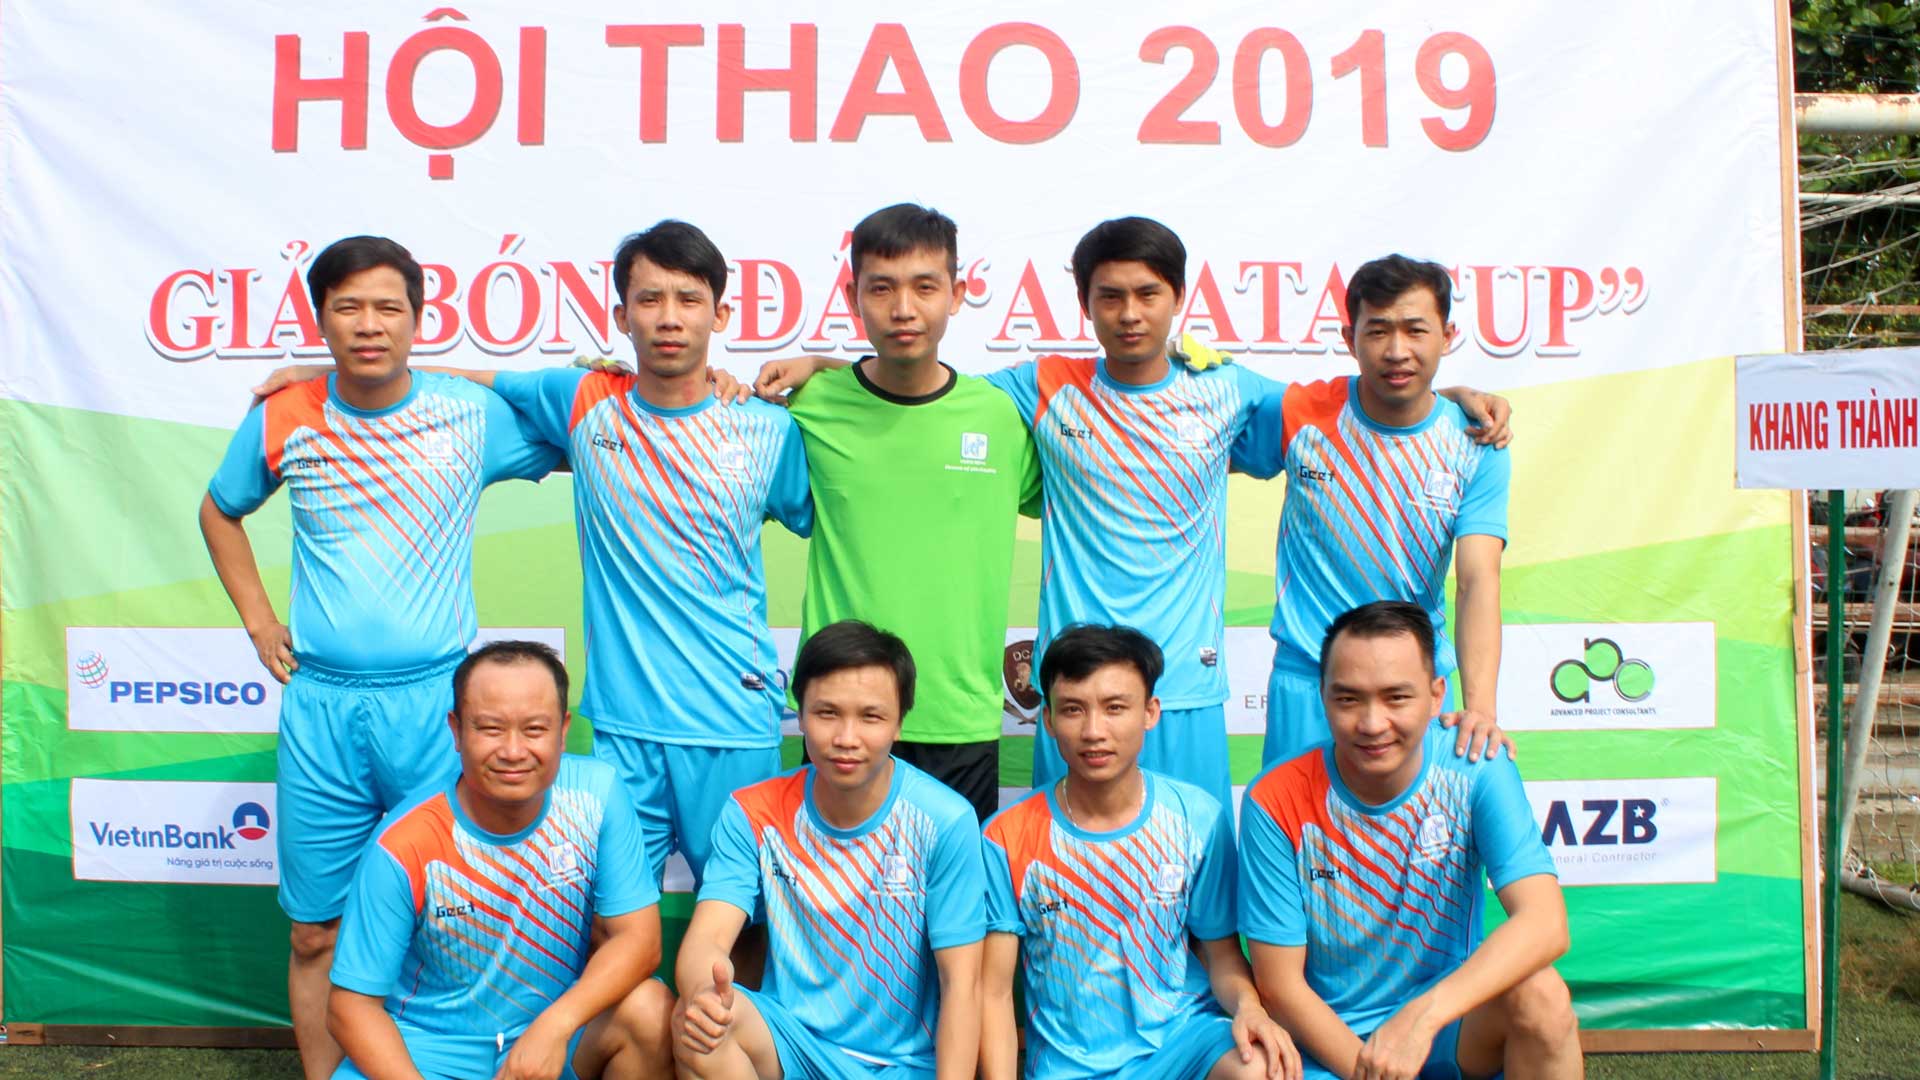 Hội thao bóng đá Amata Cup 2019